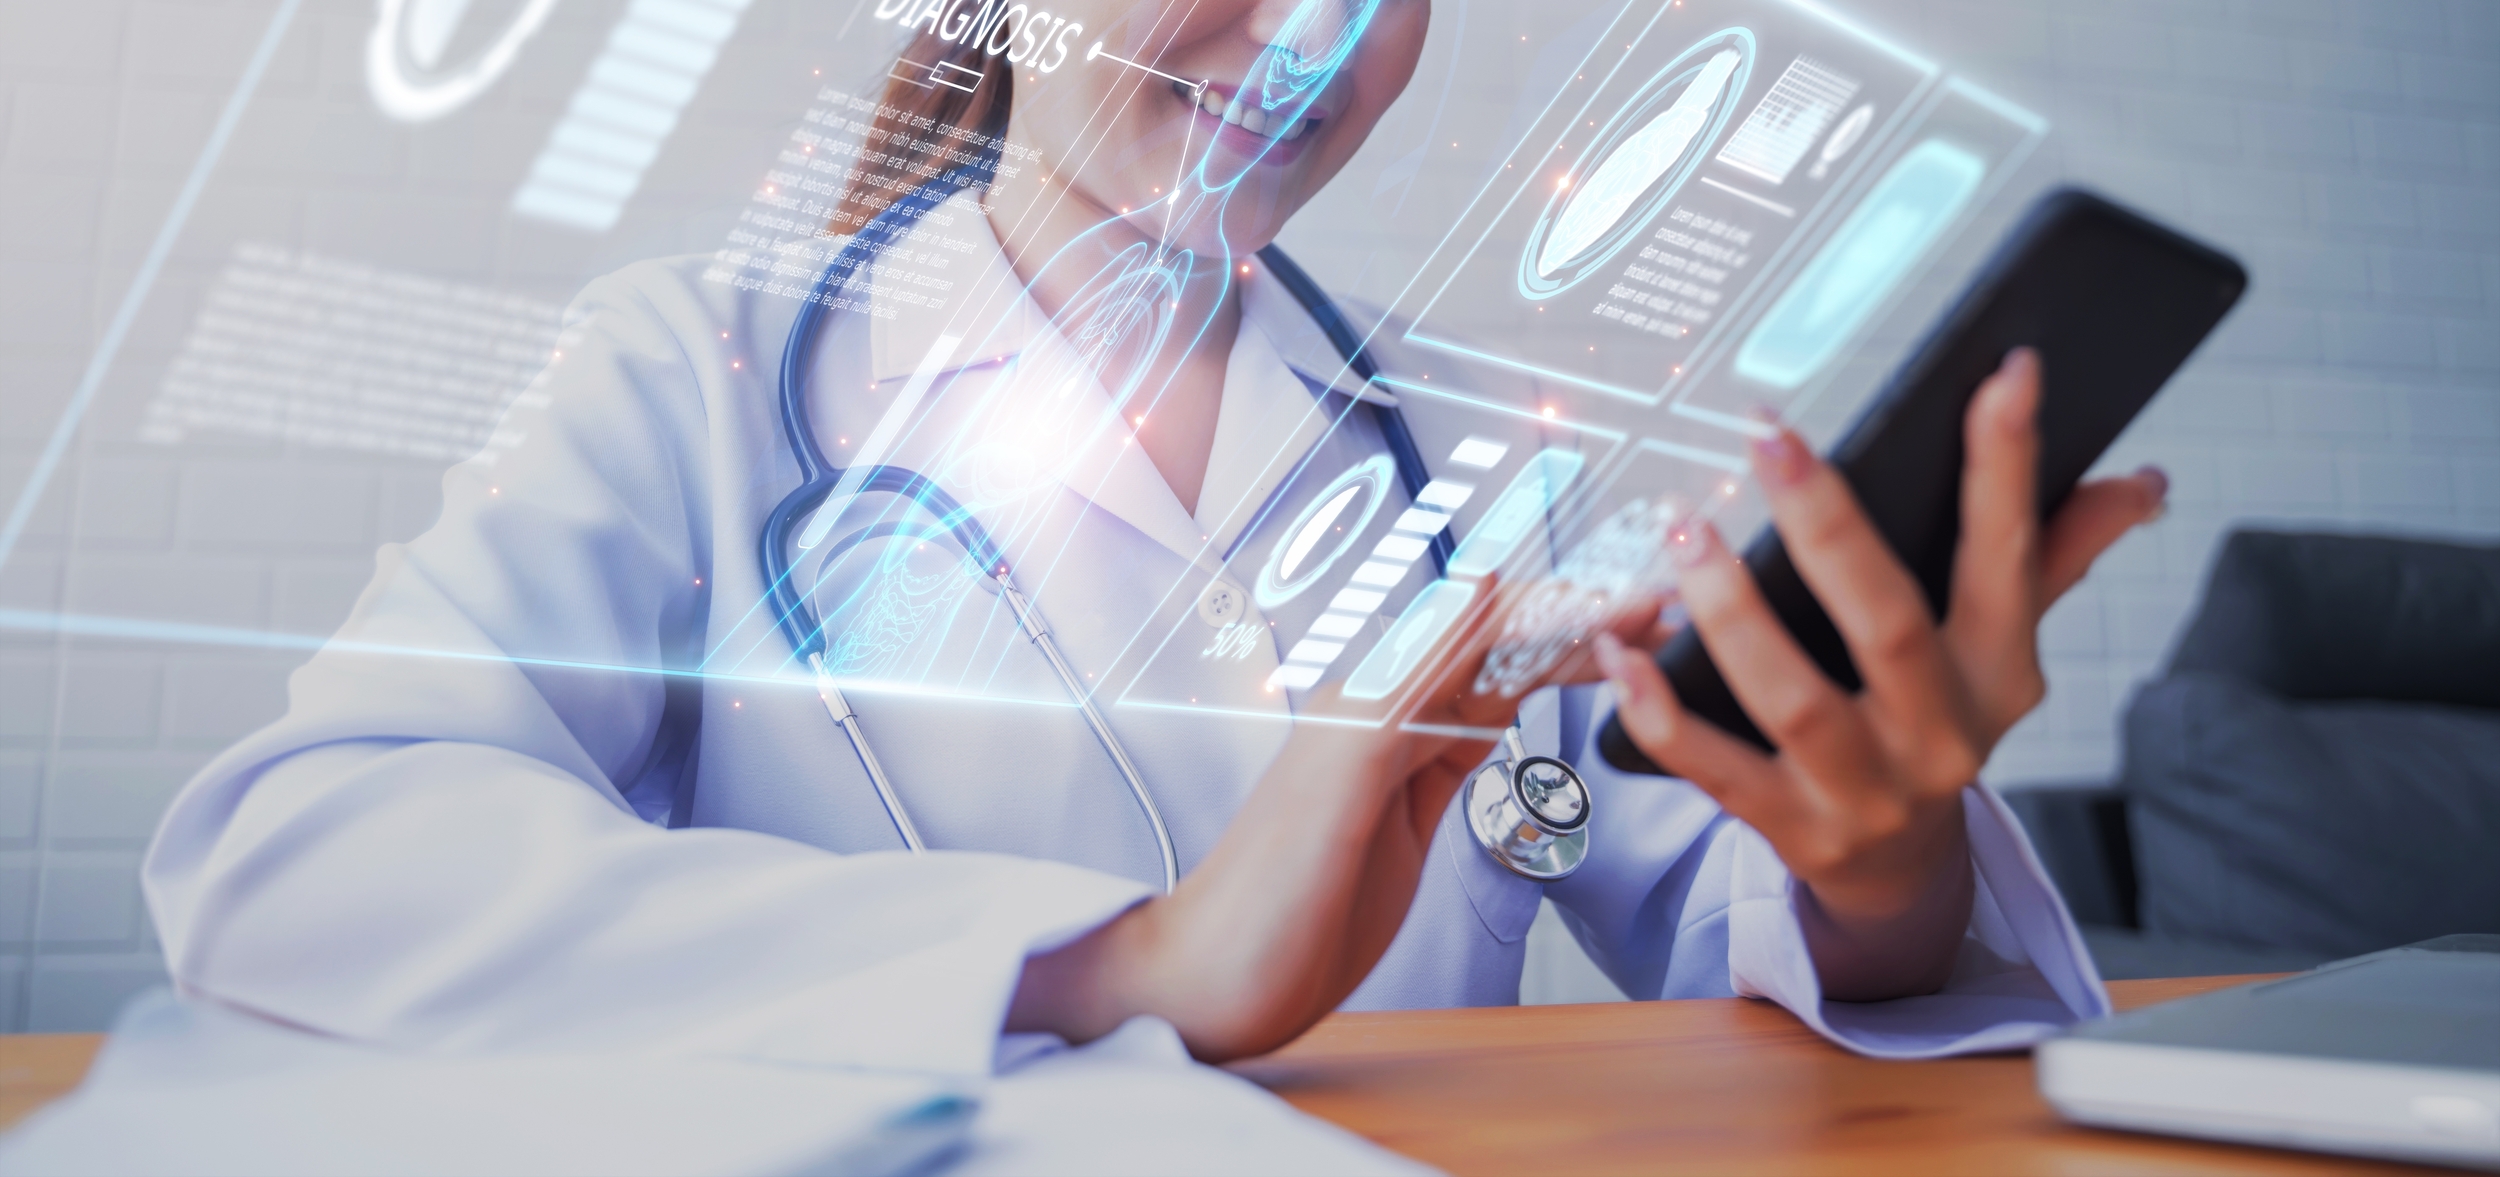 Os benefícios do certificado digital para médicos